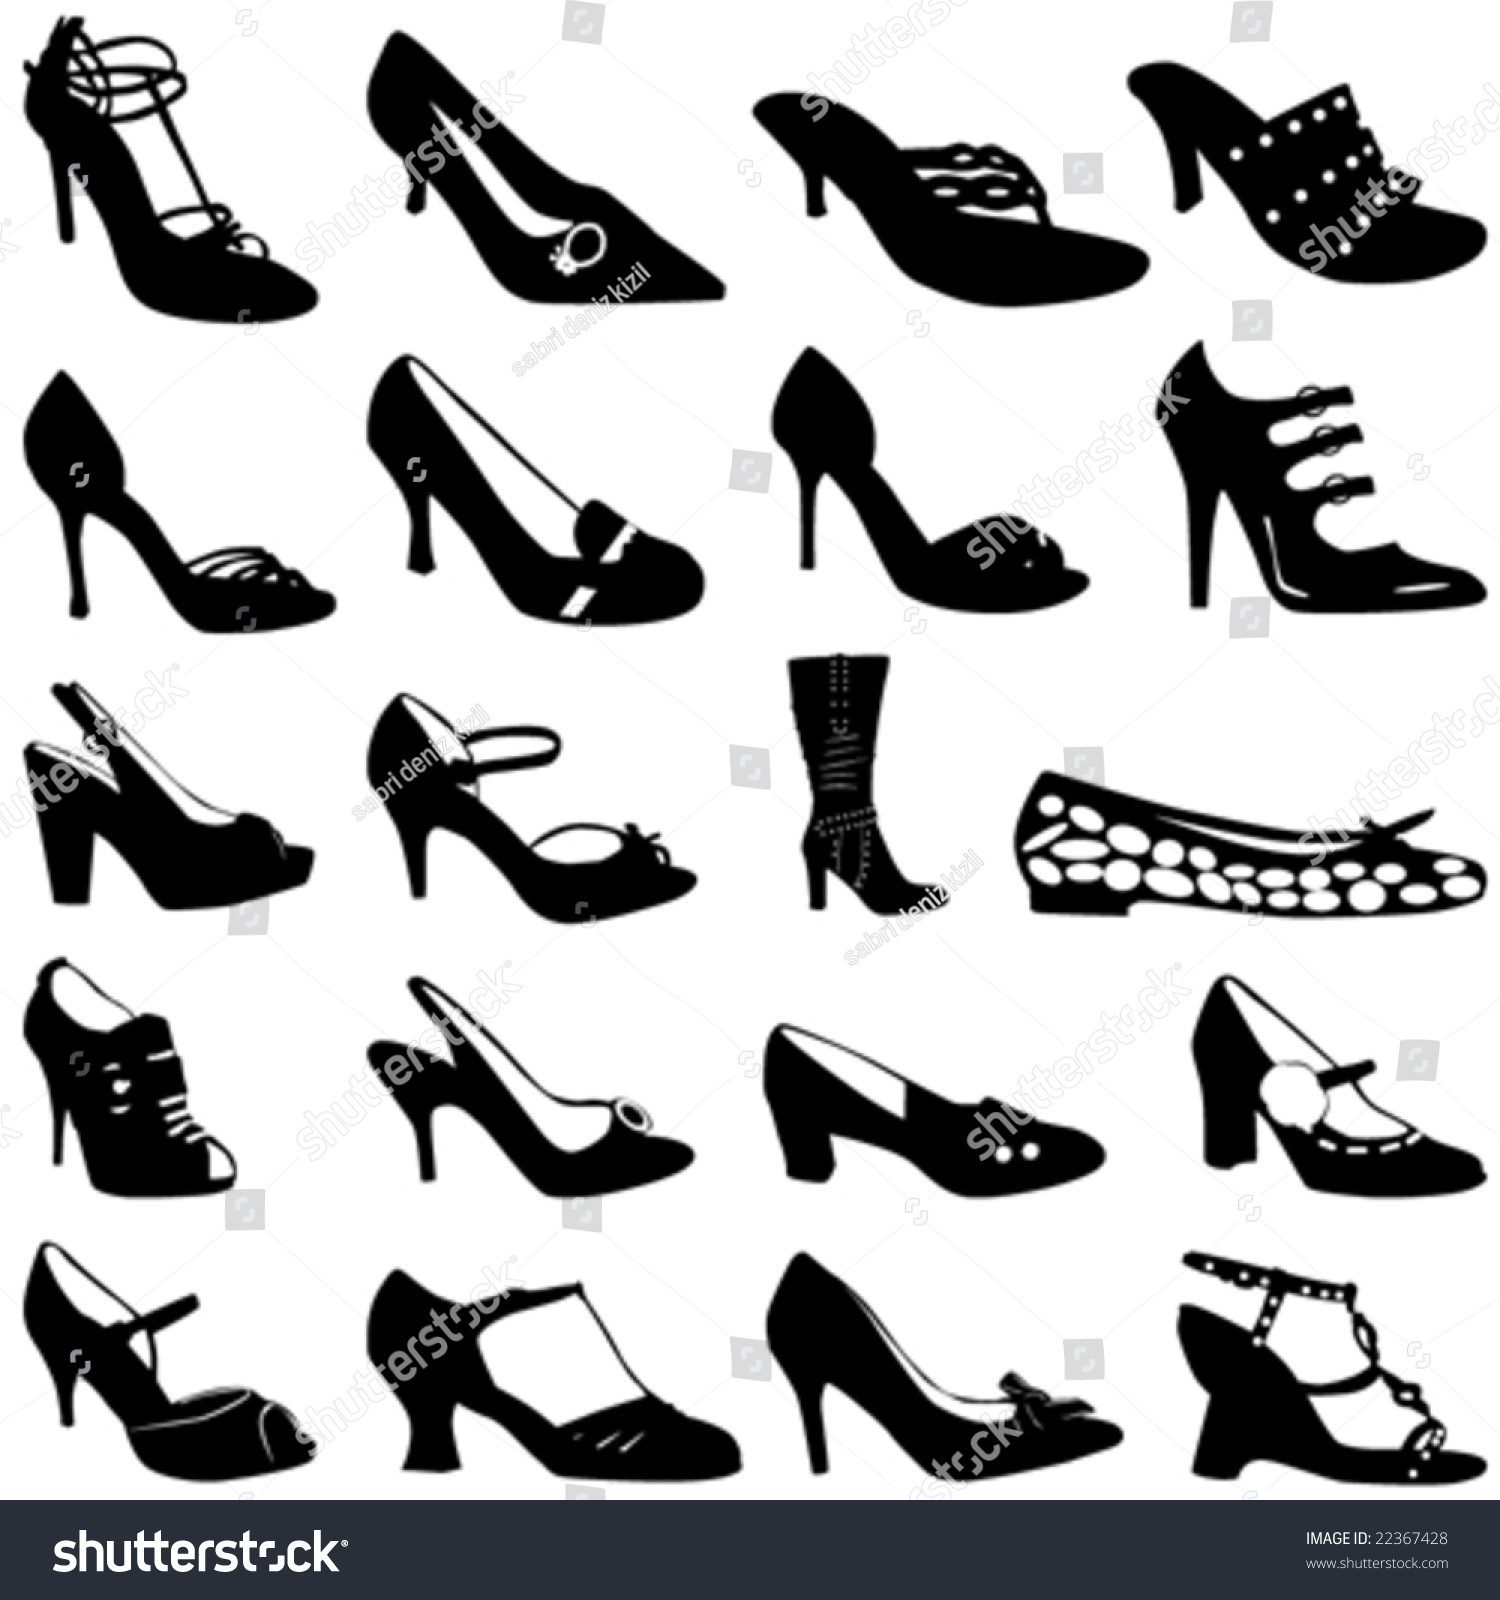 Fashion Women Shoes Vector - 22367428 : Shutterstock